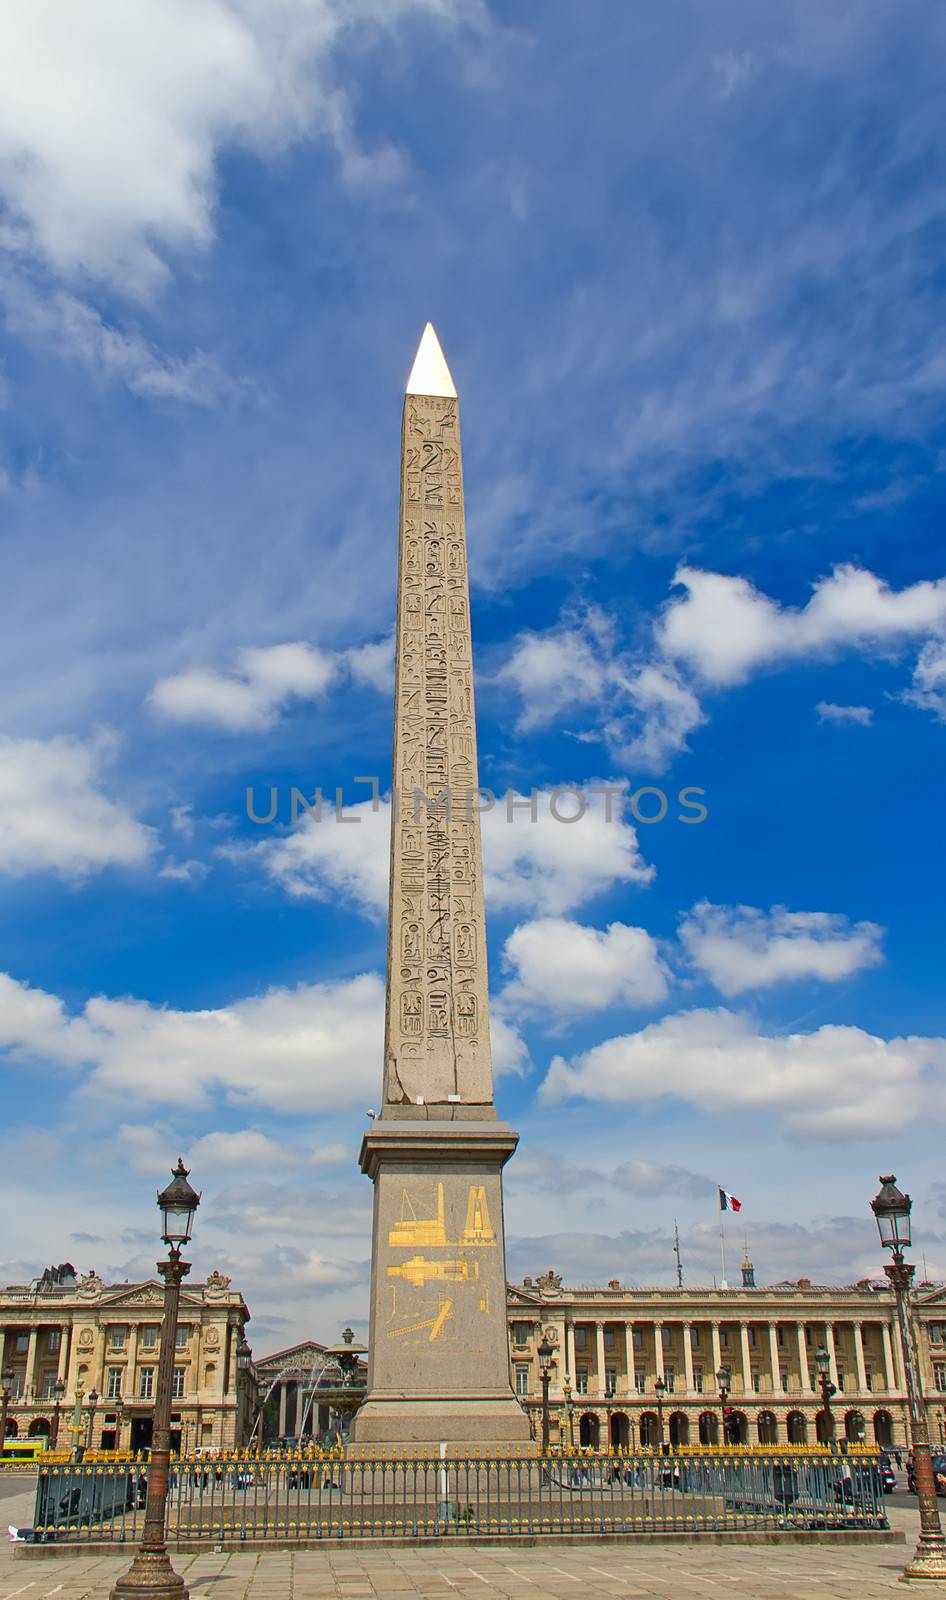 Egyptian obelisk in Paris, France